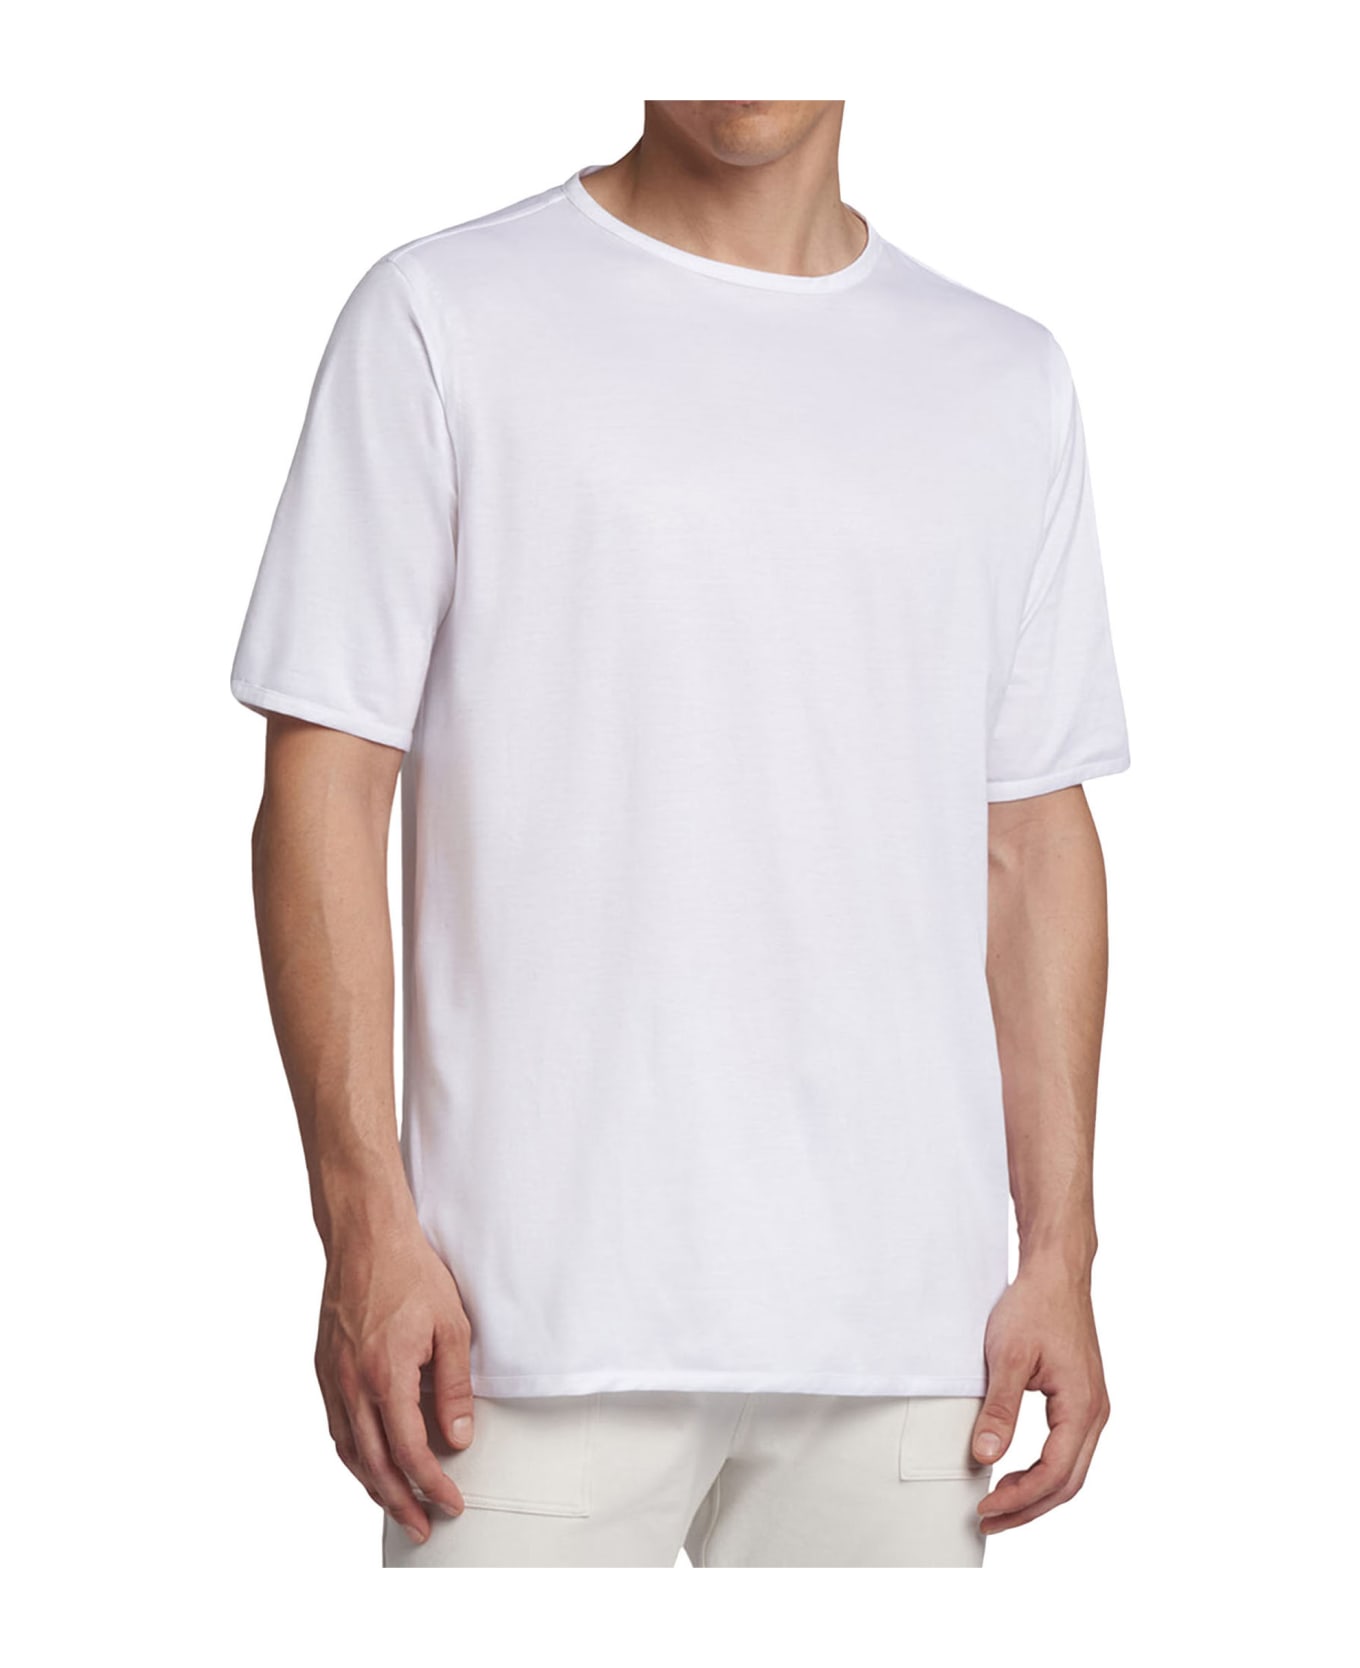 Kiton T-shirt Roundneck Cotton - WHITE シャツ